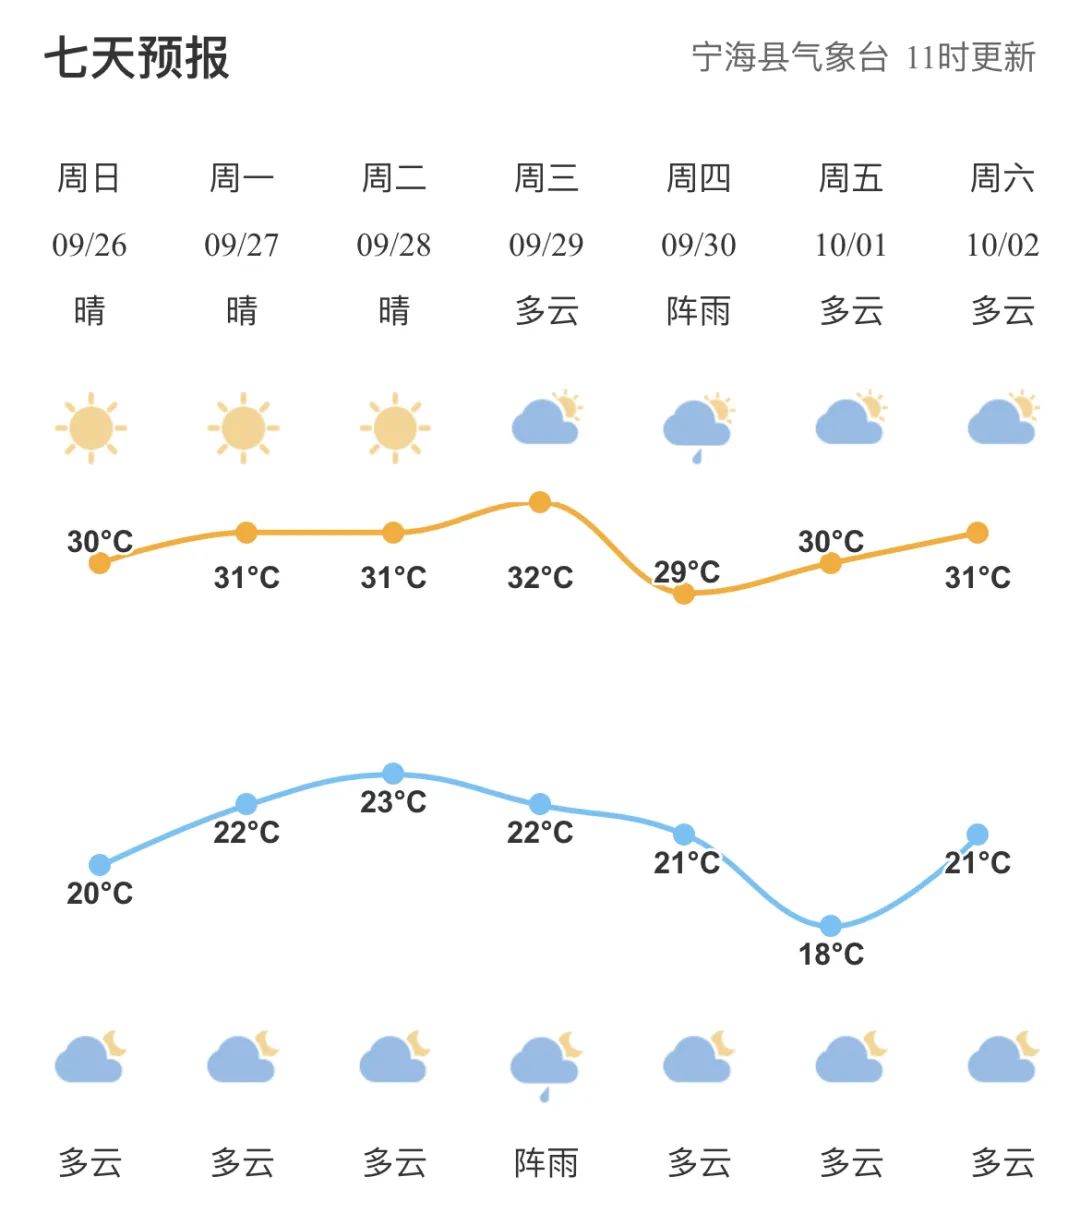 北京这周天气预报_新沂天气]预报周_北京天气湿度预报